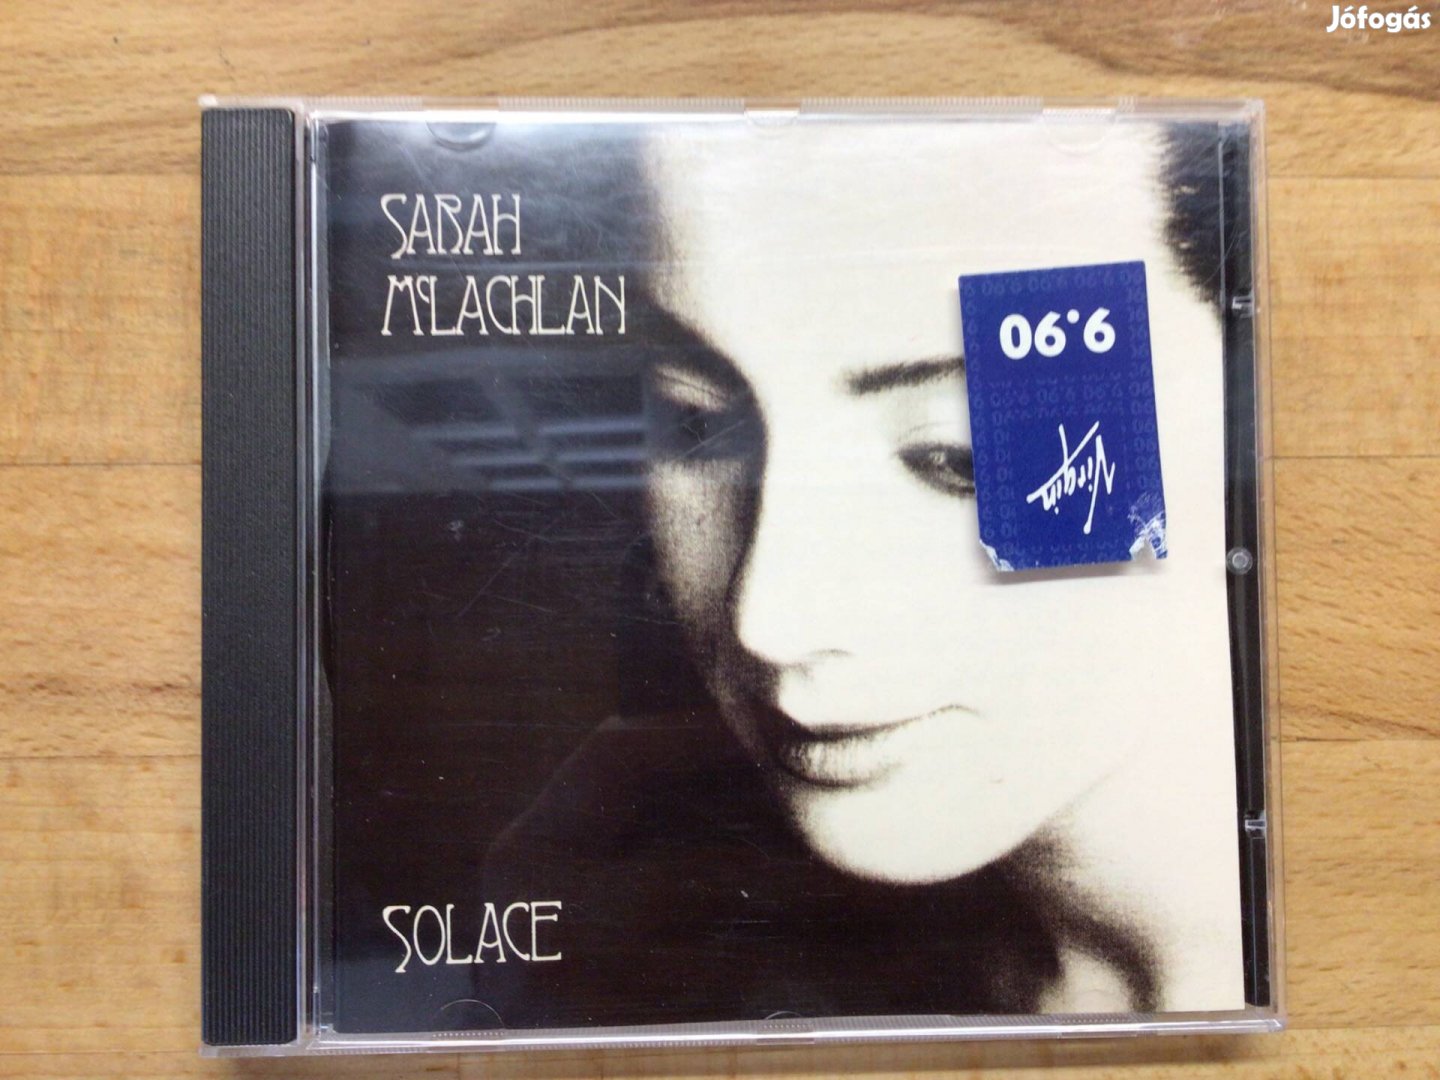 Sarah Mclachlan- Solace